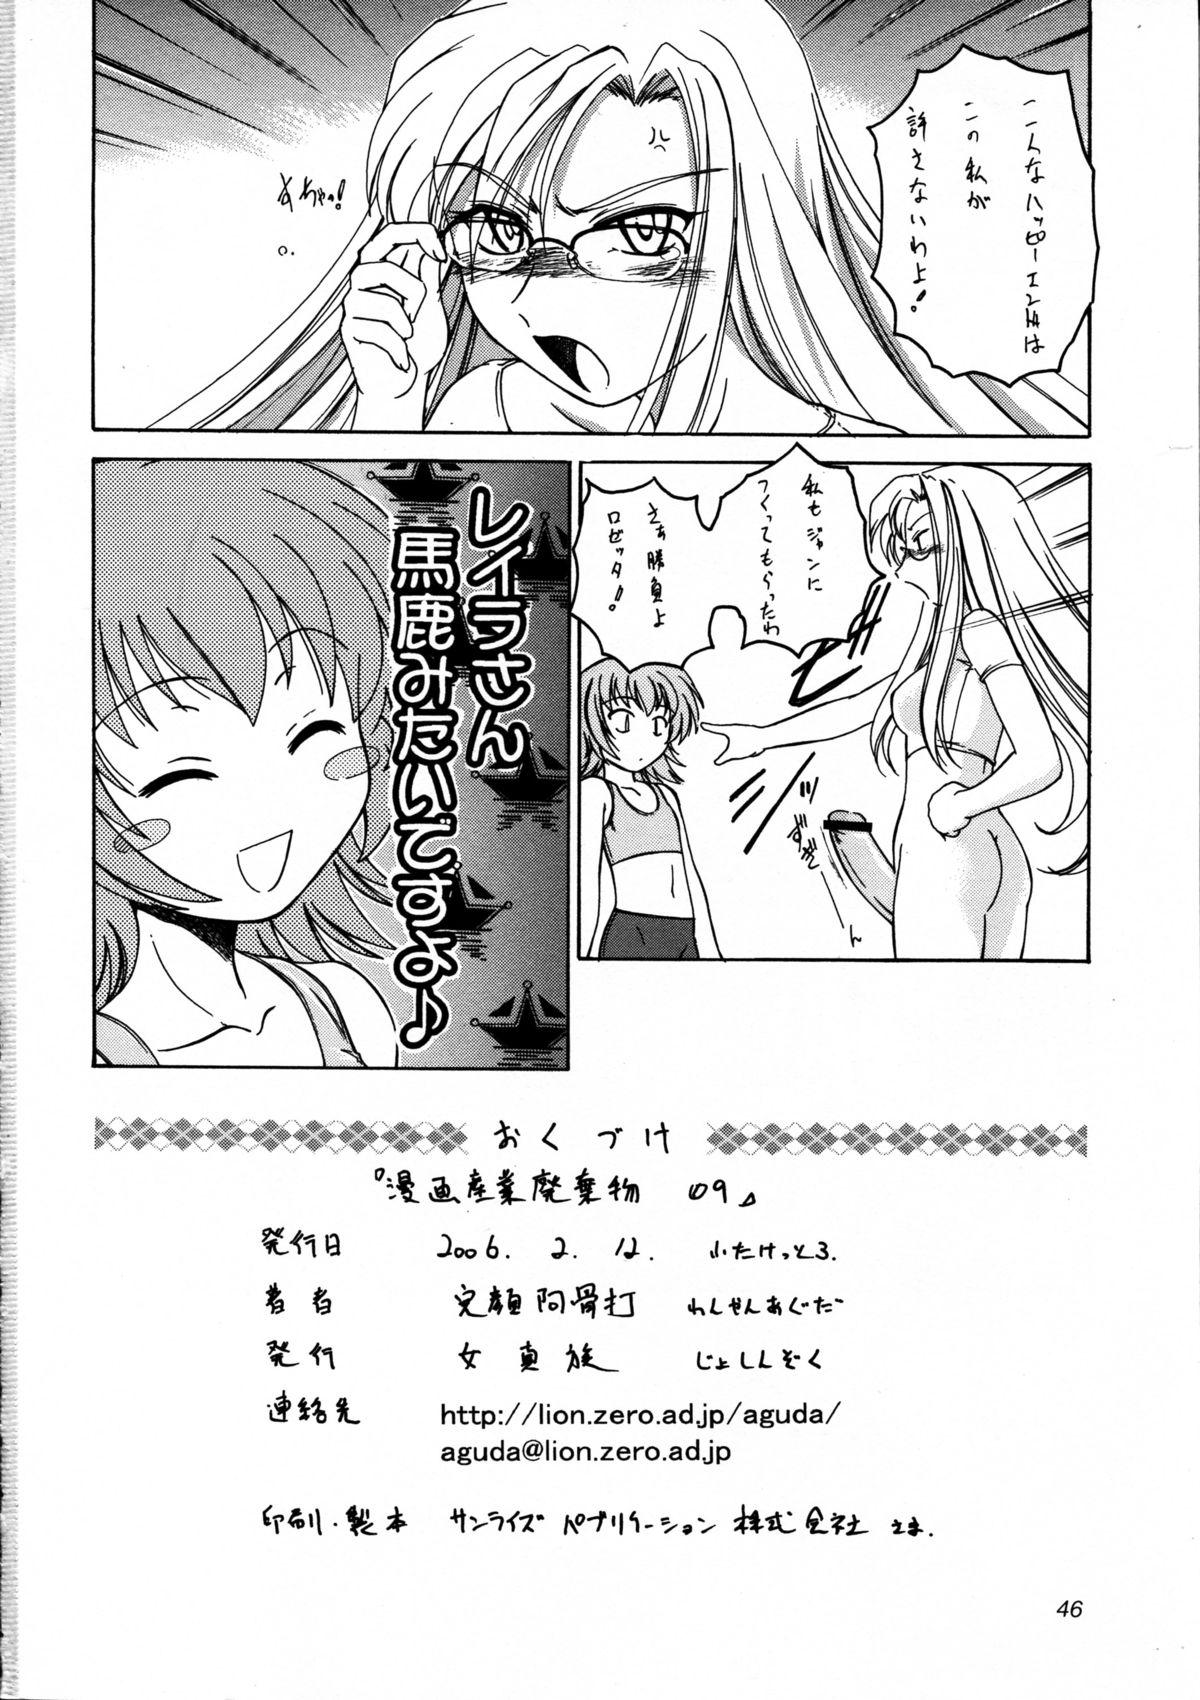 Dom Manga Sangyou Haikibutsu 09 - Kaleido star Banging - Page 46